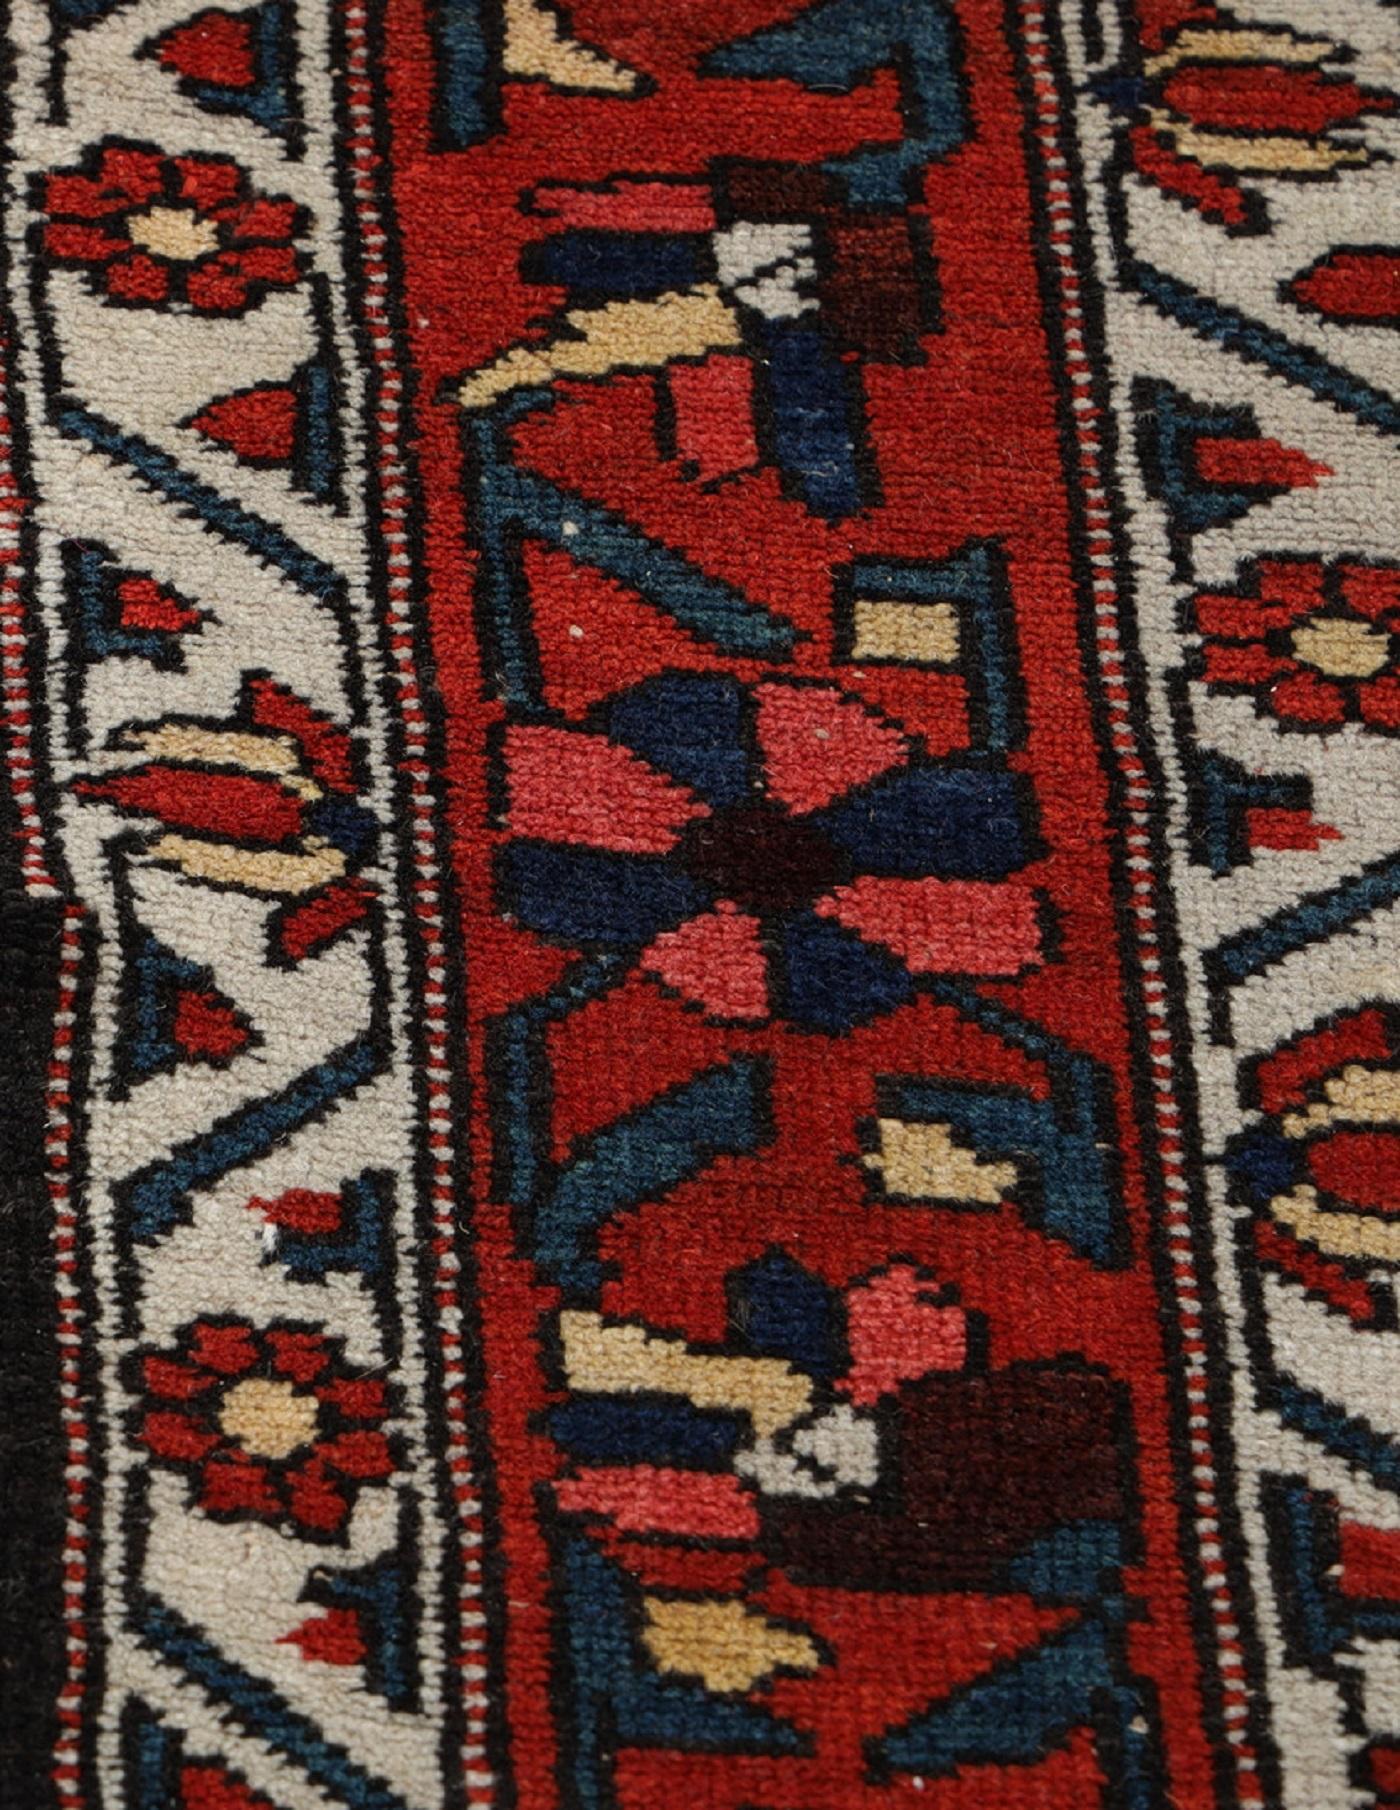 Dieser traditionelle handgewebte Teppich wurde in den 1890er Jahren hergestellt. Es zeigt ein sehr detailliertes zentrales Medaillon, das auf einem tiefroten Feld mit Akzenten in Elfenbeinblau und Rot gewebt ist. Handgewebt aus handgesponnener